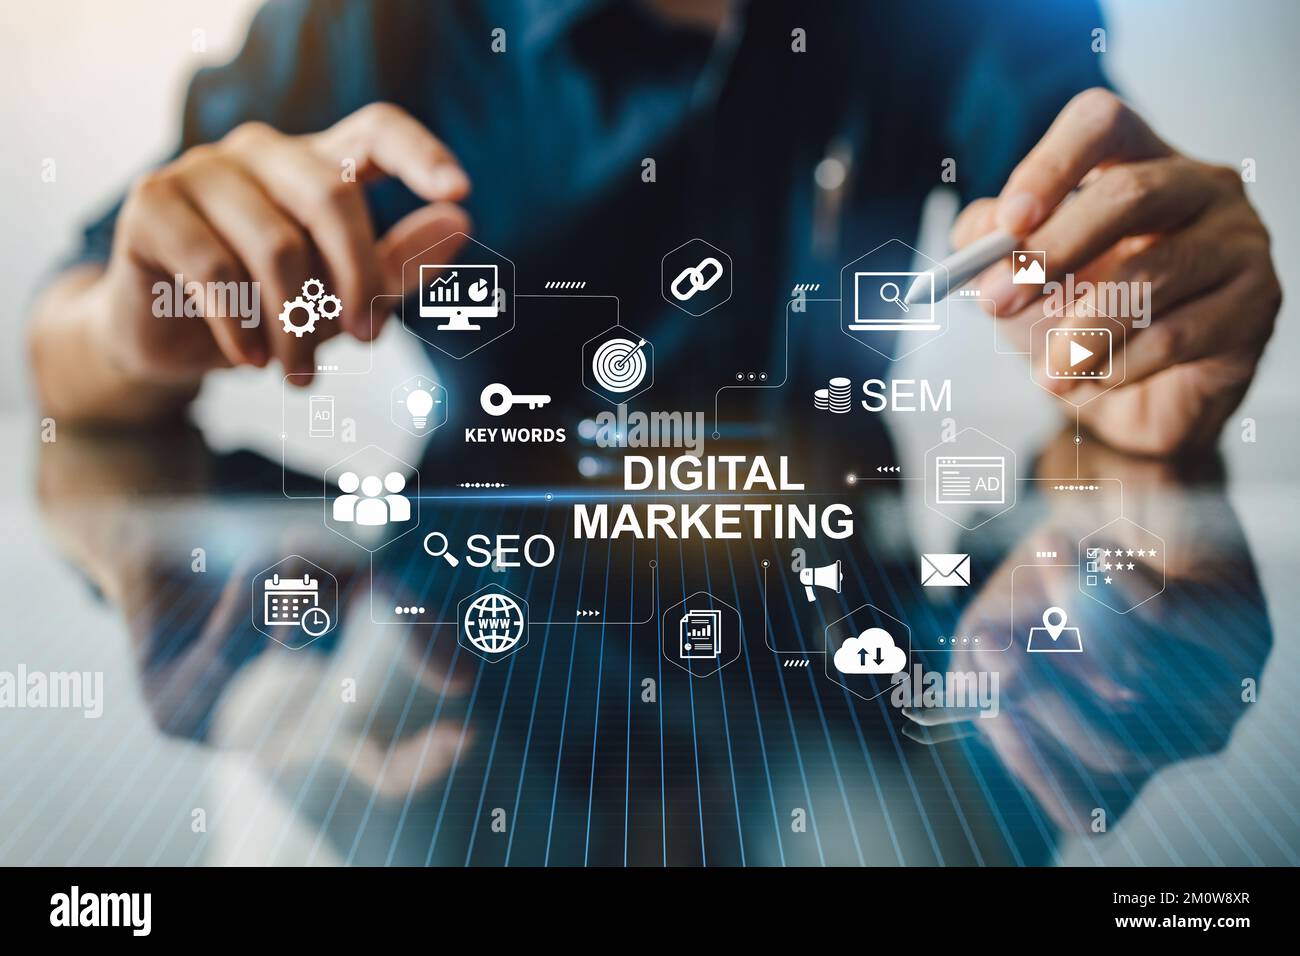 Concept de technologie d'entreprise de marketing numérique. Site Web adertisement email social media network, SEO, SEM vidéo et les icônes d'application mobile en virtuel Banque D'Images